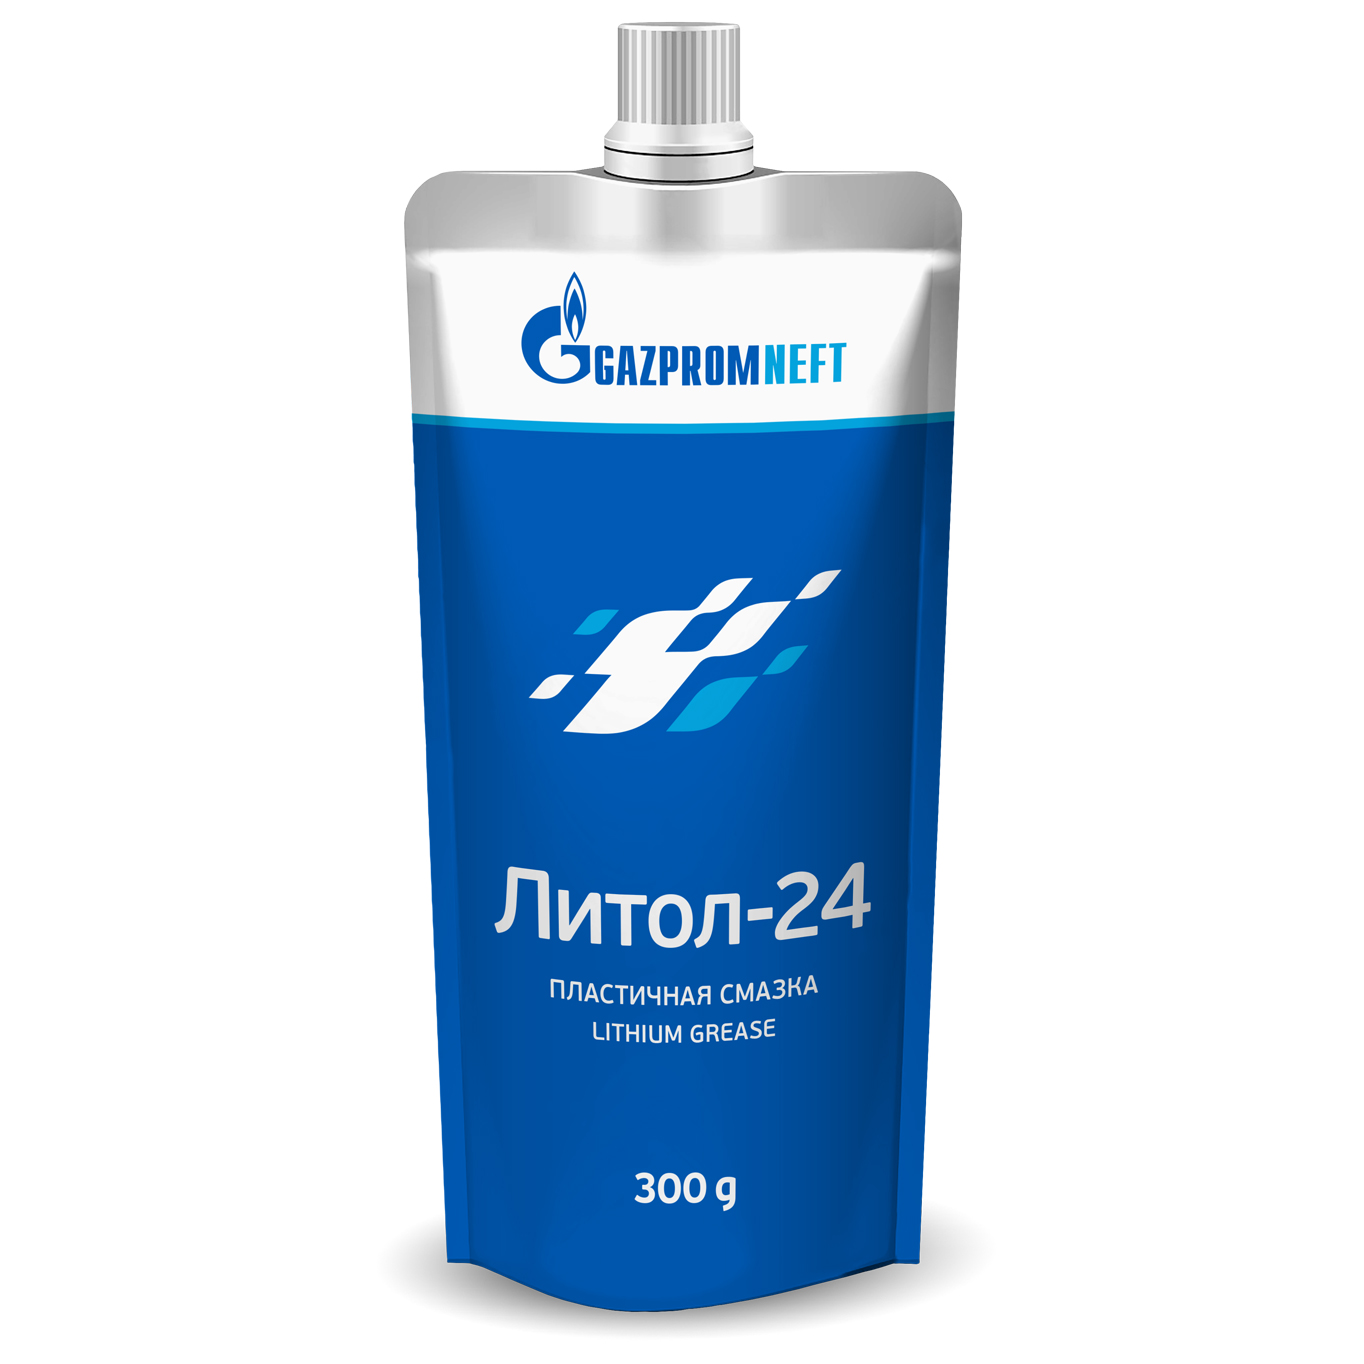 Пластичная смазка Gazpromneft Литол-24 (300 г)